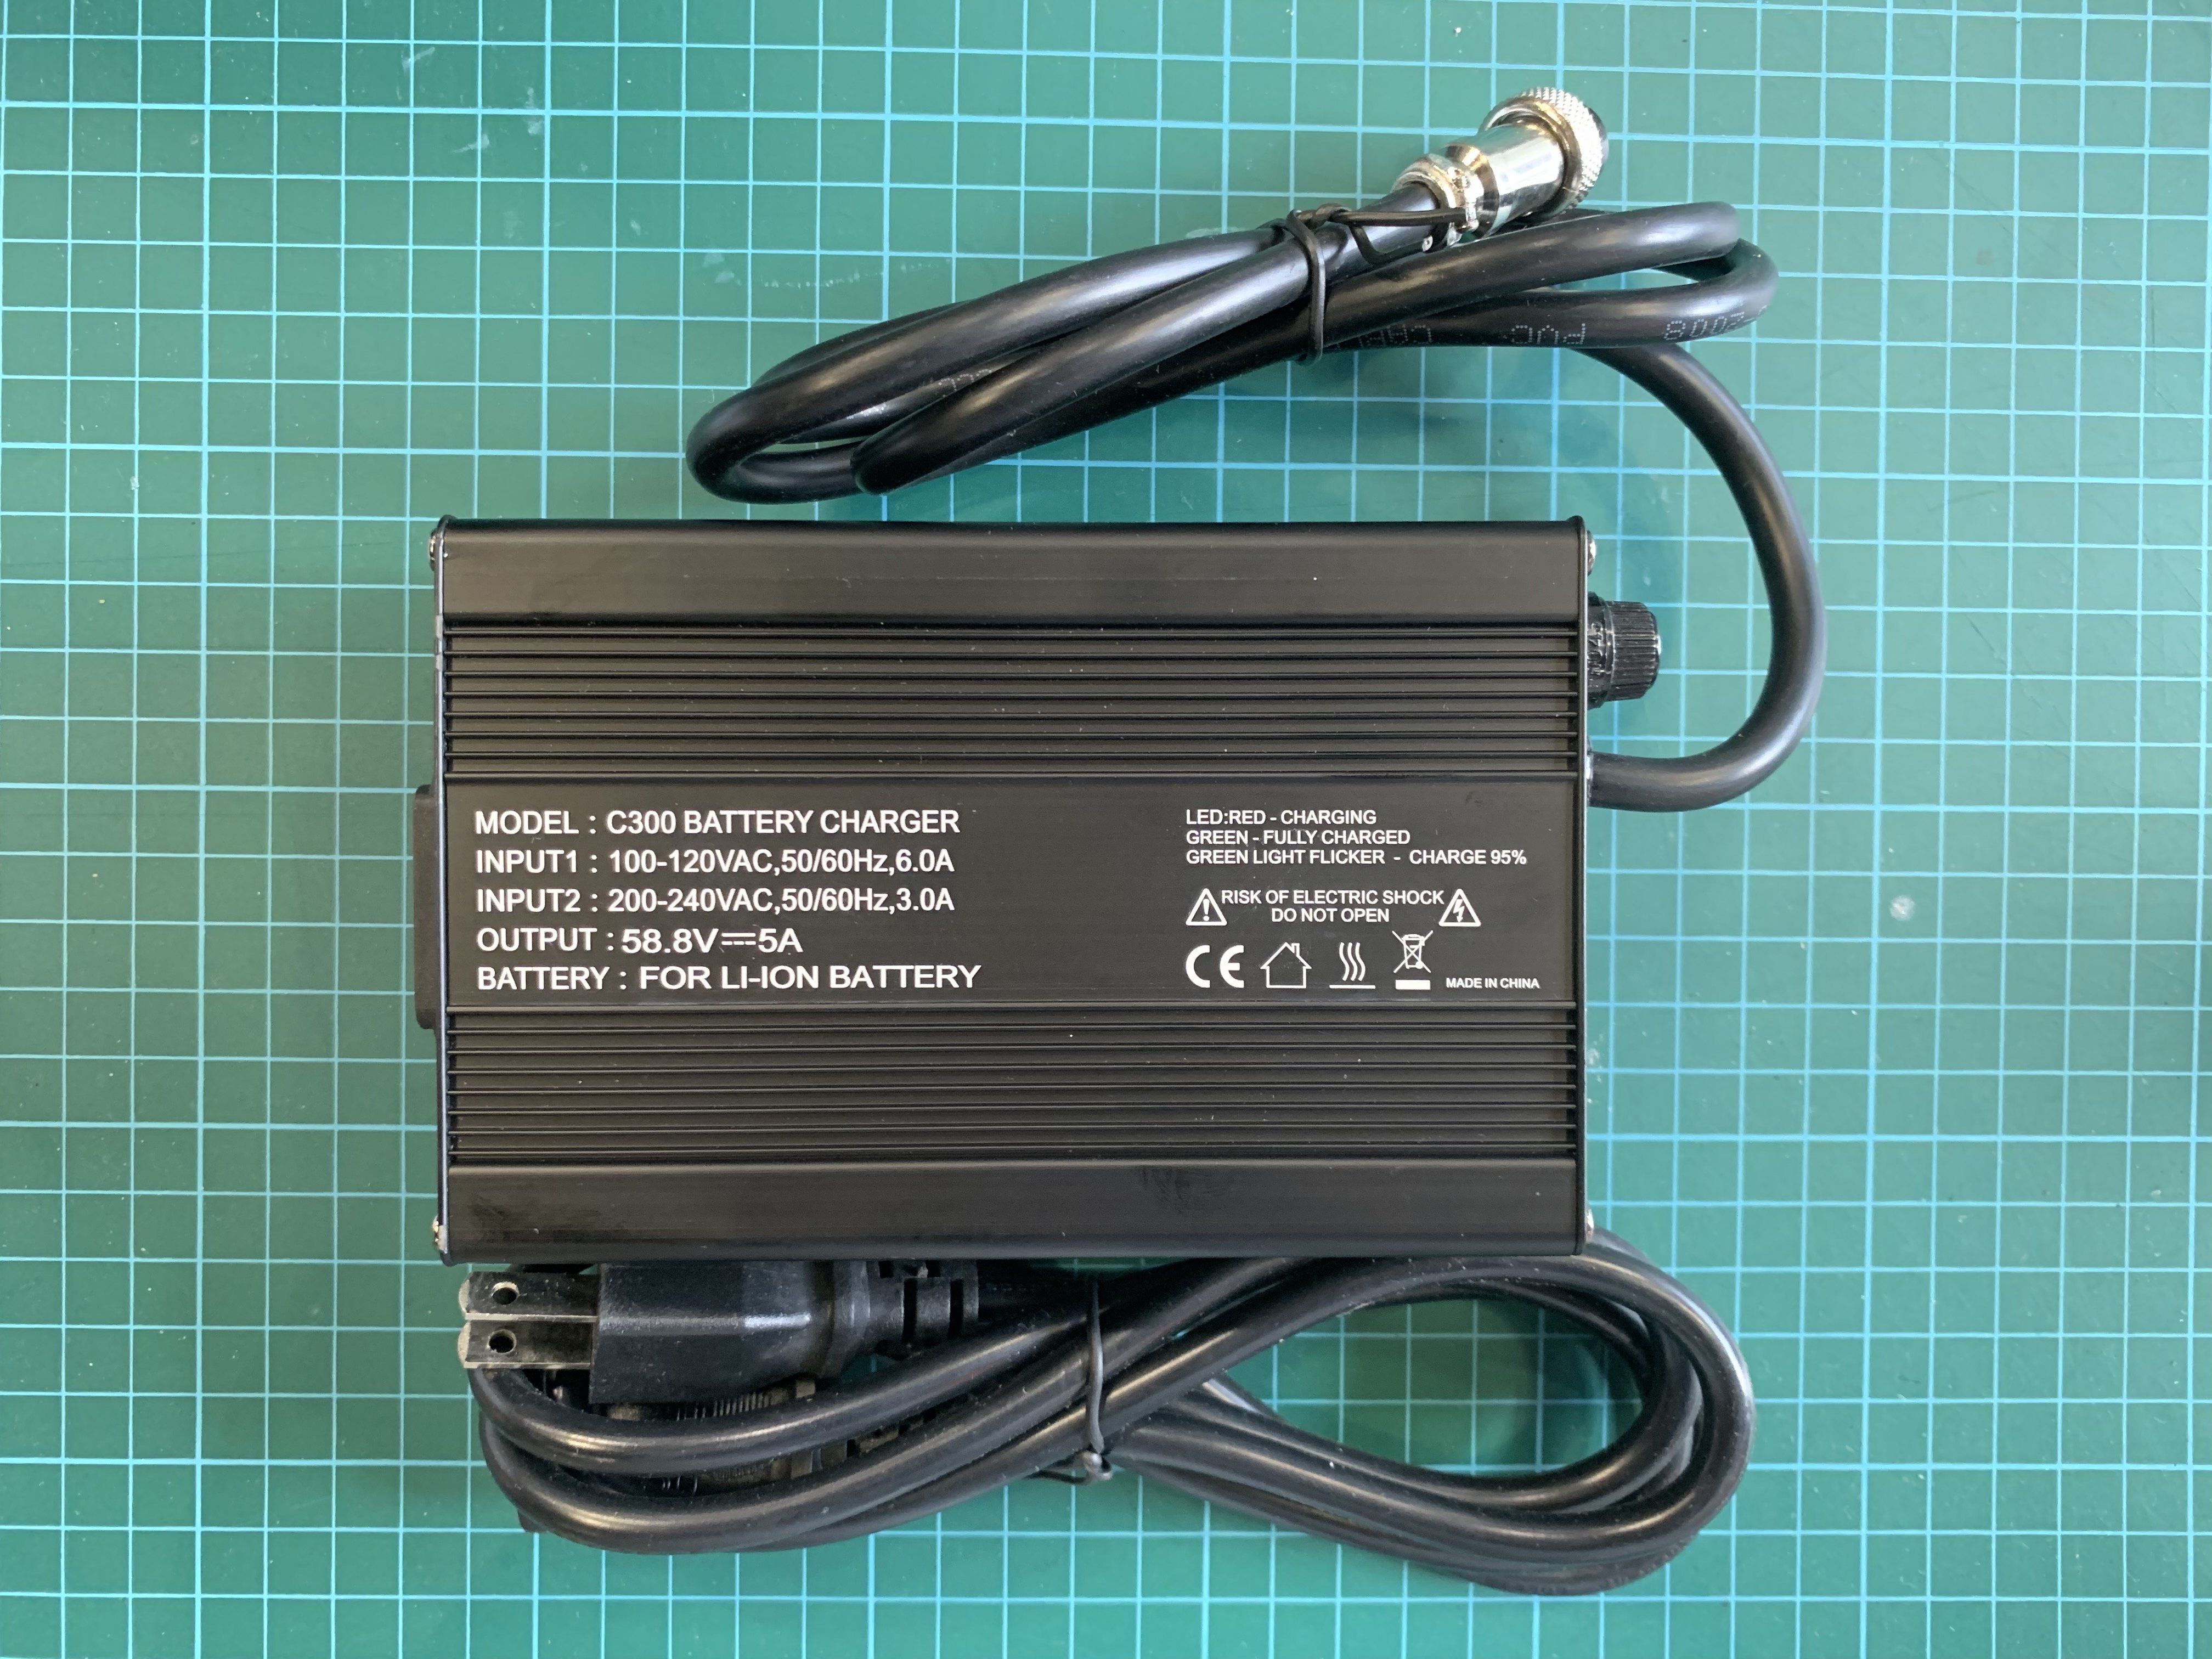 58.8v/5A Rapid-charger. Lightning, Vsett 9